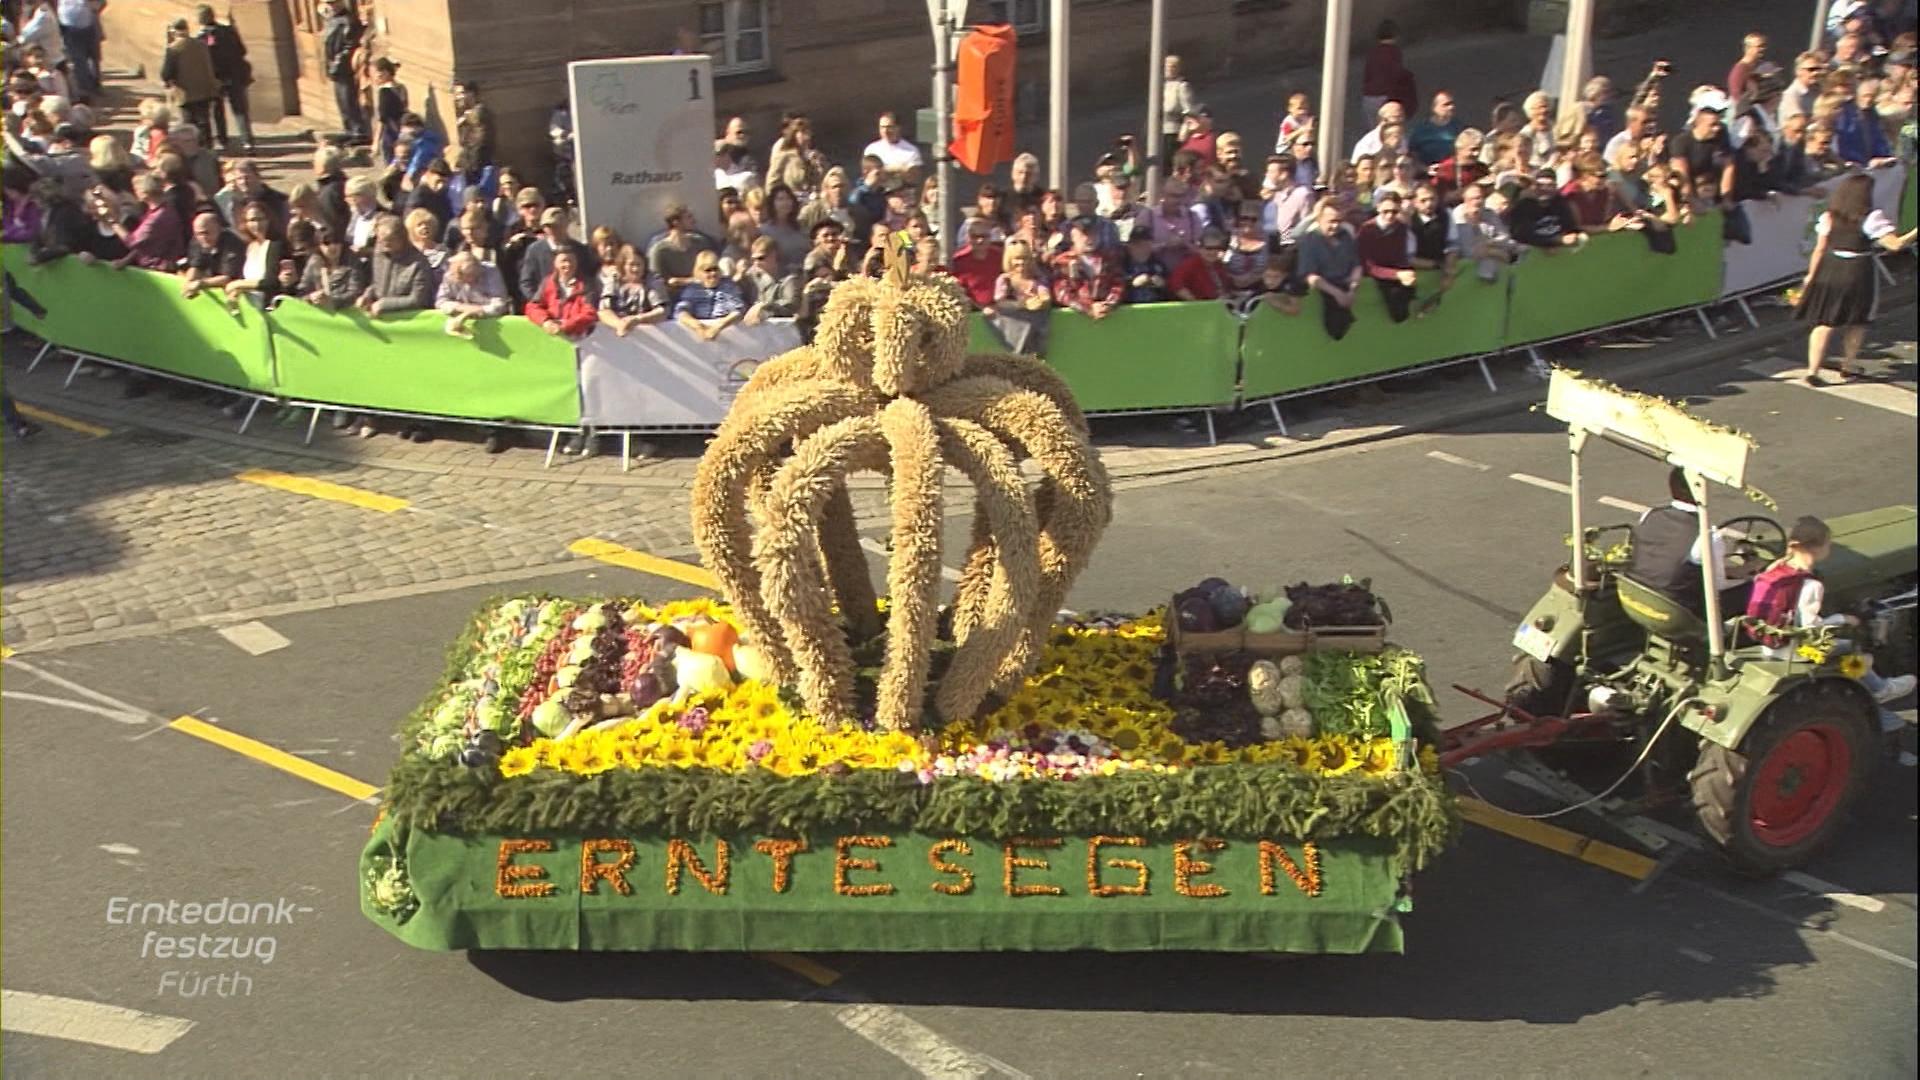 Erntedankfest: Η γιορτή των ευχαριστιών στη Βαυαρία 1